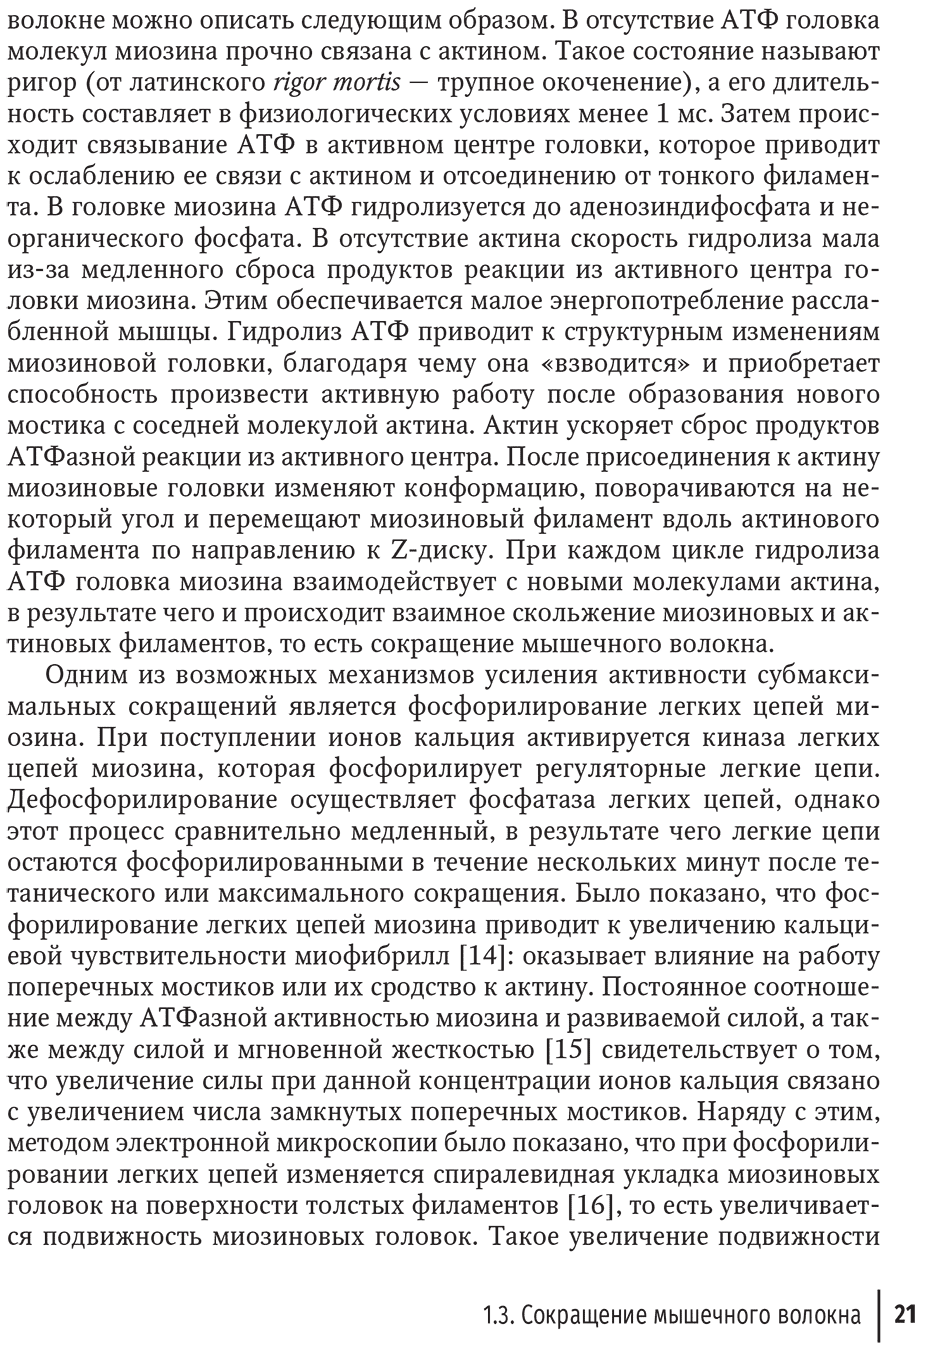 Пример страницы из книги "Миопатии в практике клинициста" - И. Н. Пасечника, С. А. Бернс, В. В. Бояринцева